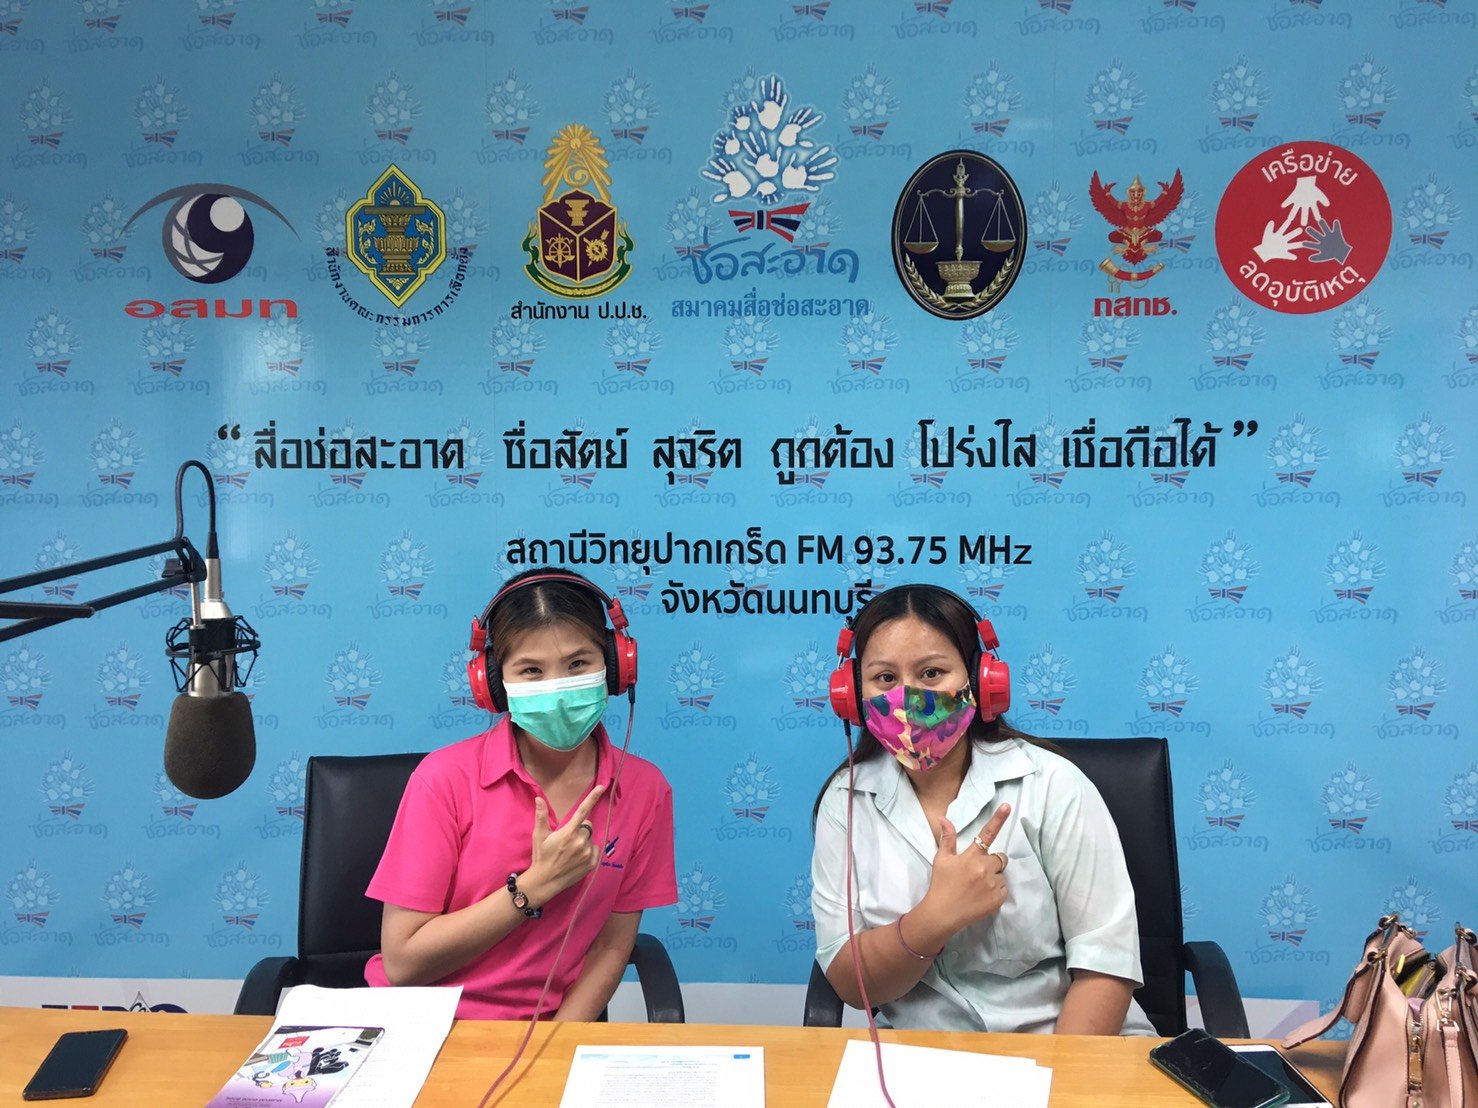 รายการ “คนไทยไม่ทนต่อการทุจริต” วันเสาร์ที่ 23 ตุลาคม 2564 เวลา 18.00-18.30 น.